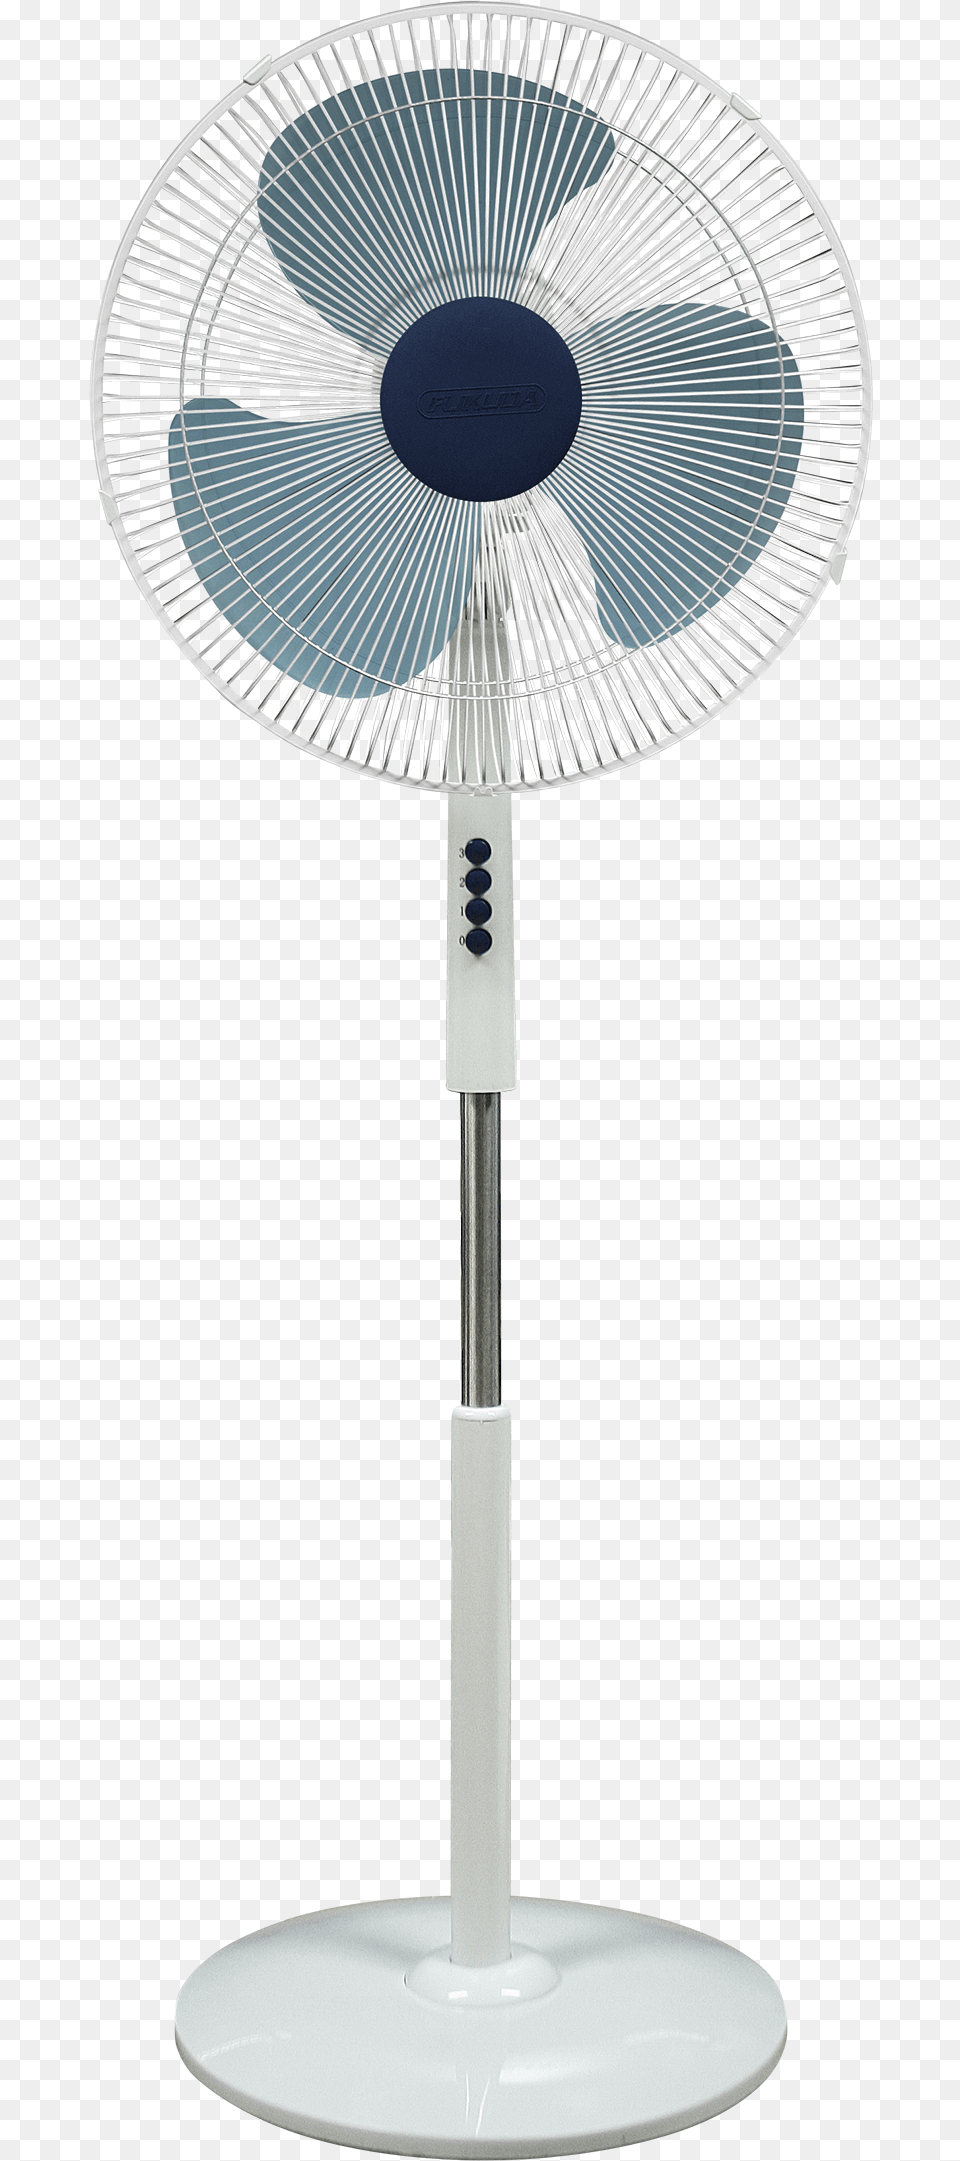 Fukuda Sf165w 16 Plastic Stand Fan Mechanical Fan, Appliance, Device, Electrical Device, Electric Fan Png